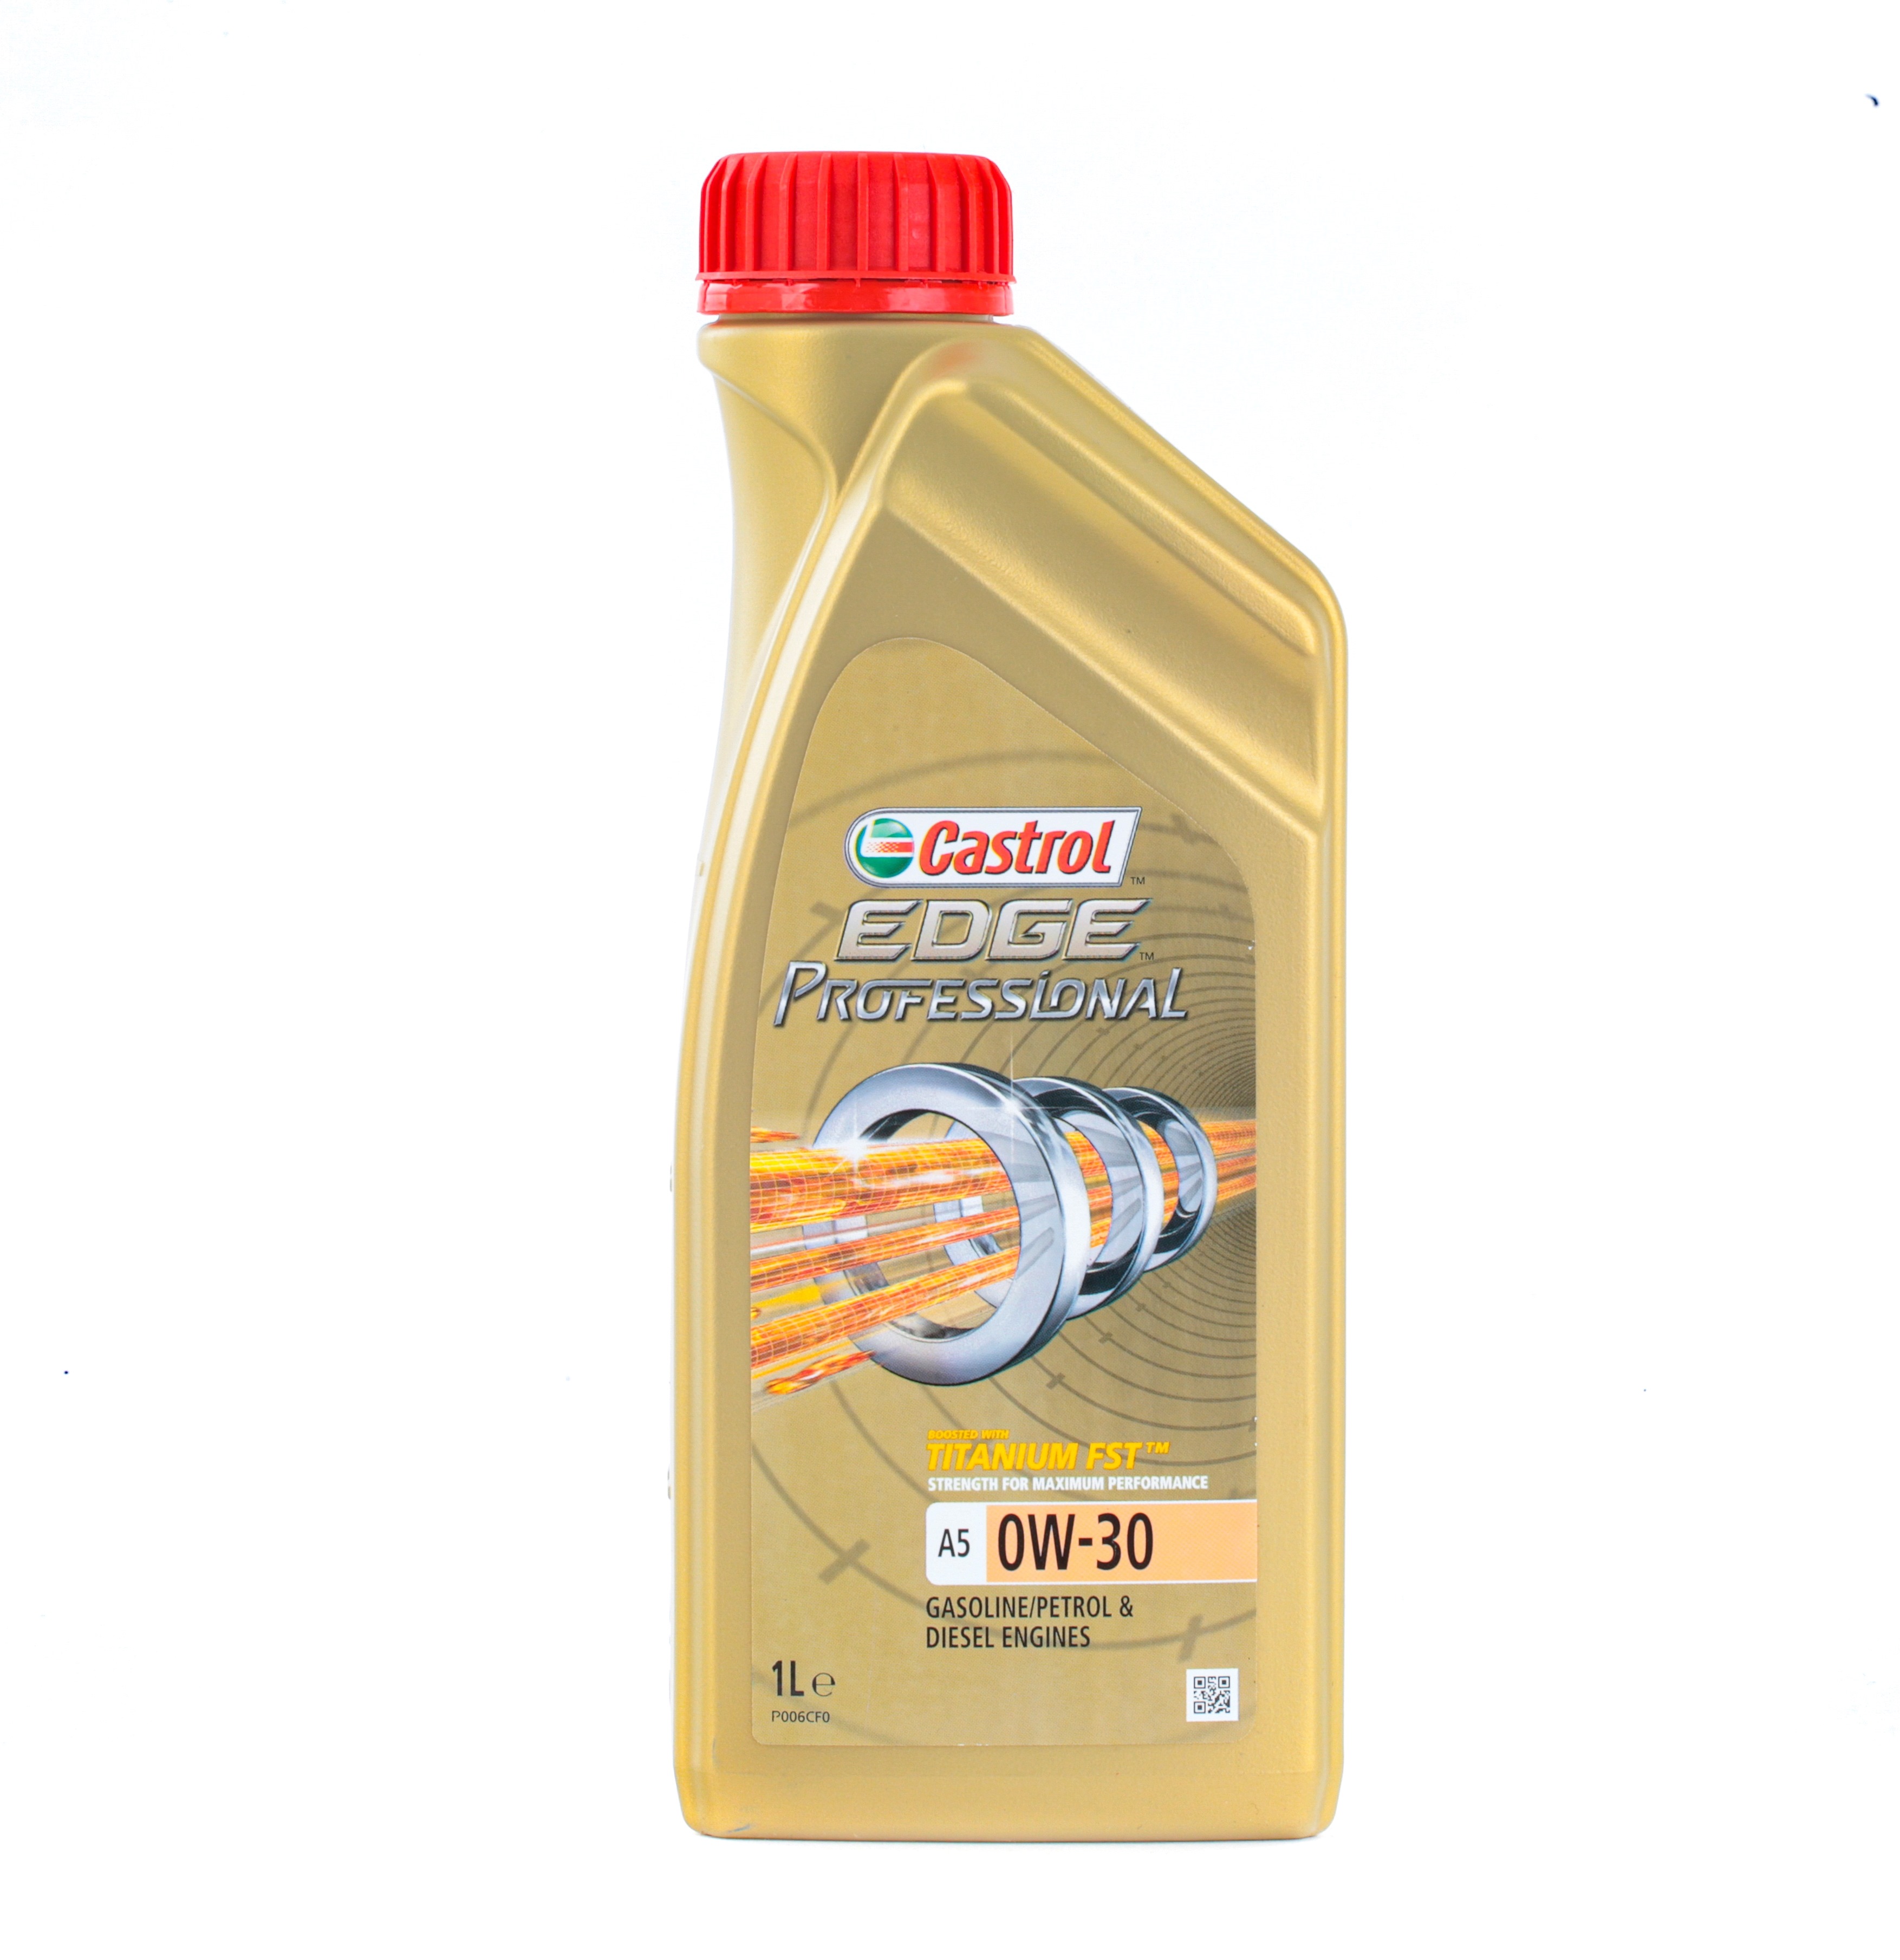 Car oil 0W-30 longlife diesel - 1536AF CASTROL EDGE Professional, A5